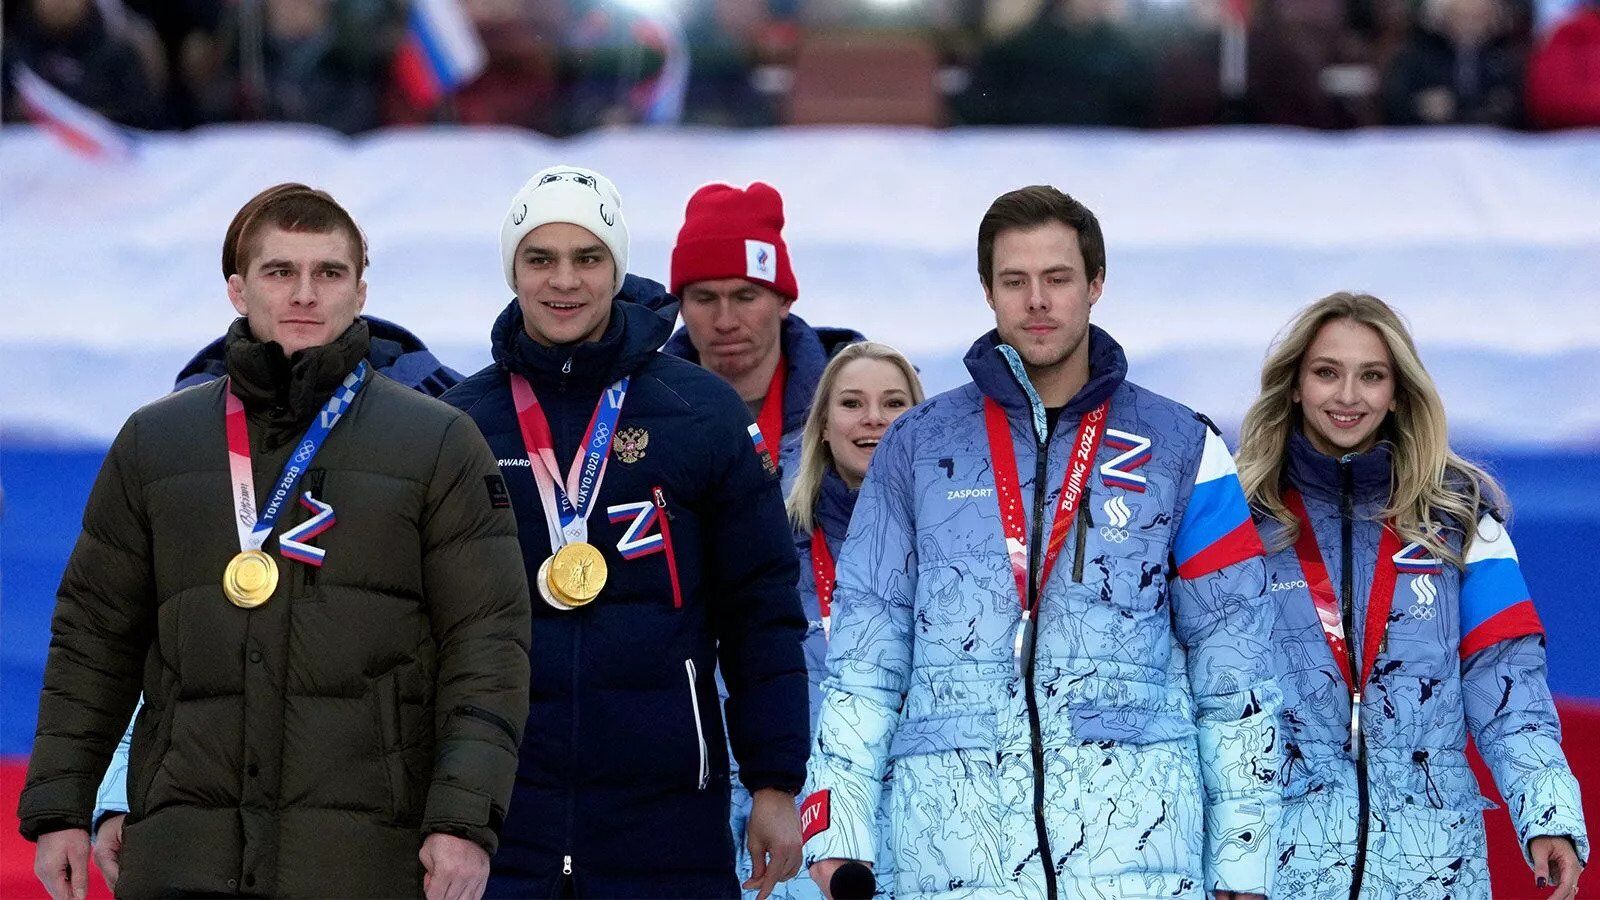 Rosyjska mistrzyni olimpijska i rywal Kharlan twierdzi, że jest ''dyskryminowany ze względu na narodowość''